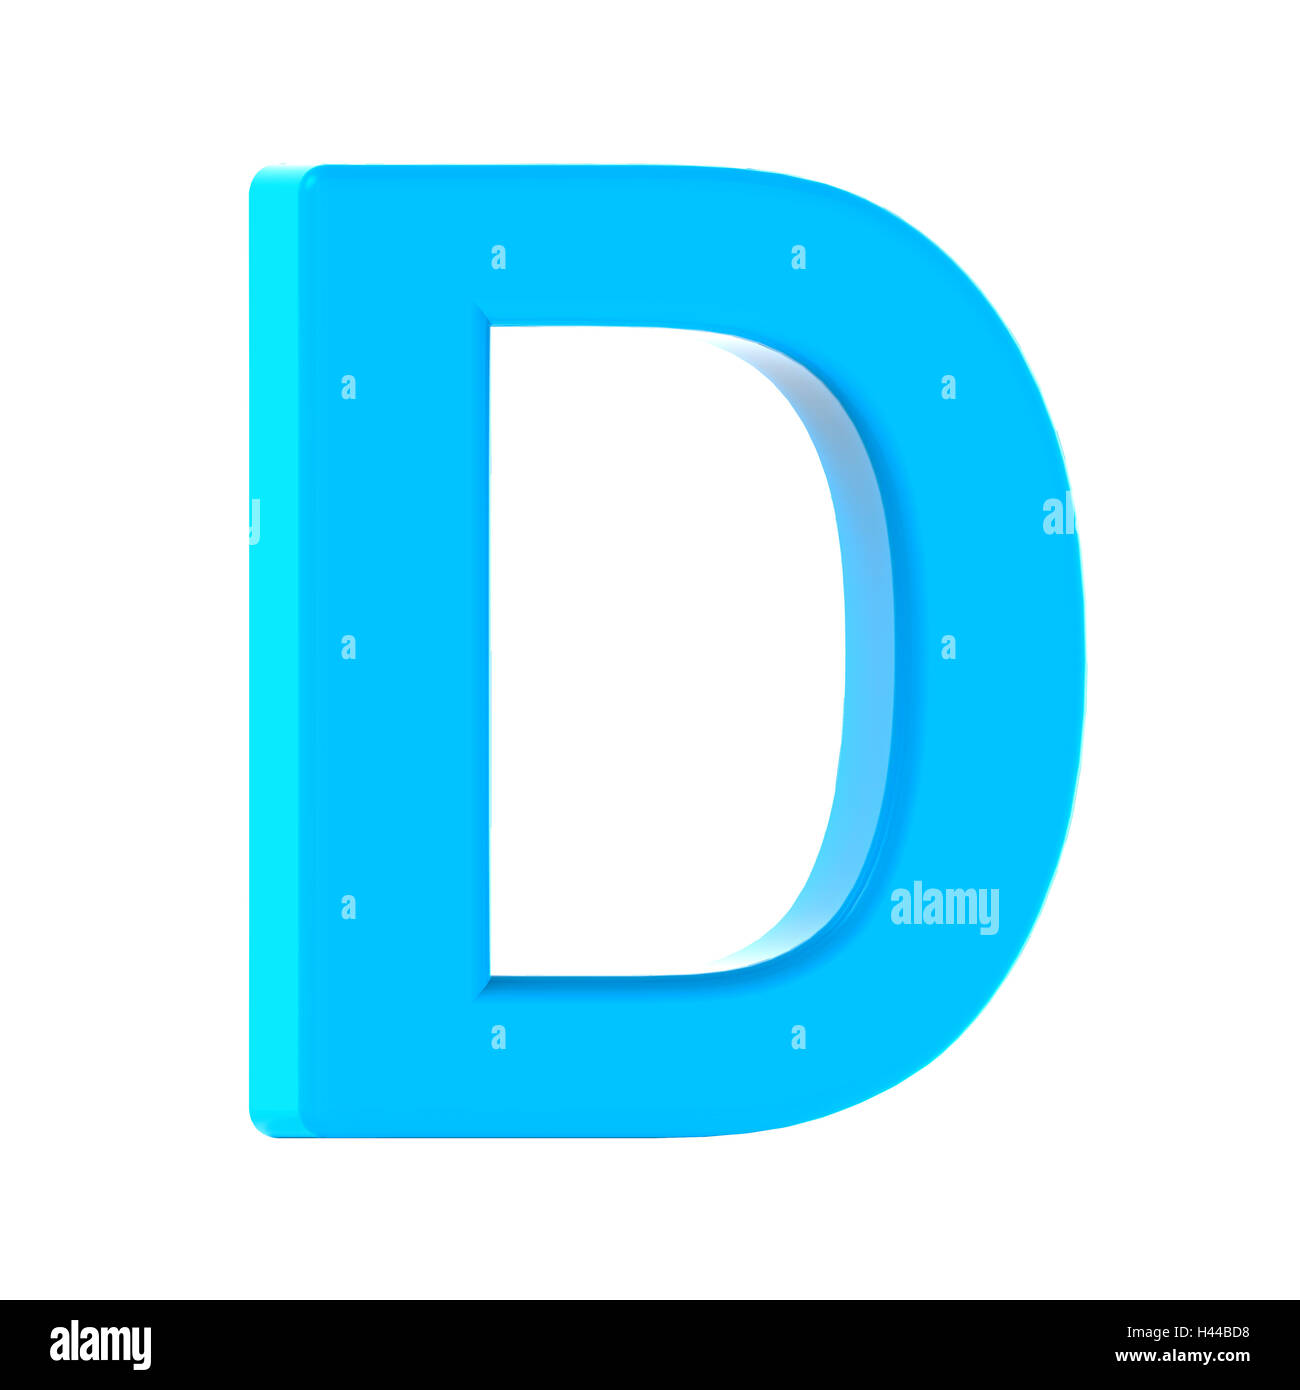 3d gauche leaning light blue lettre D 